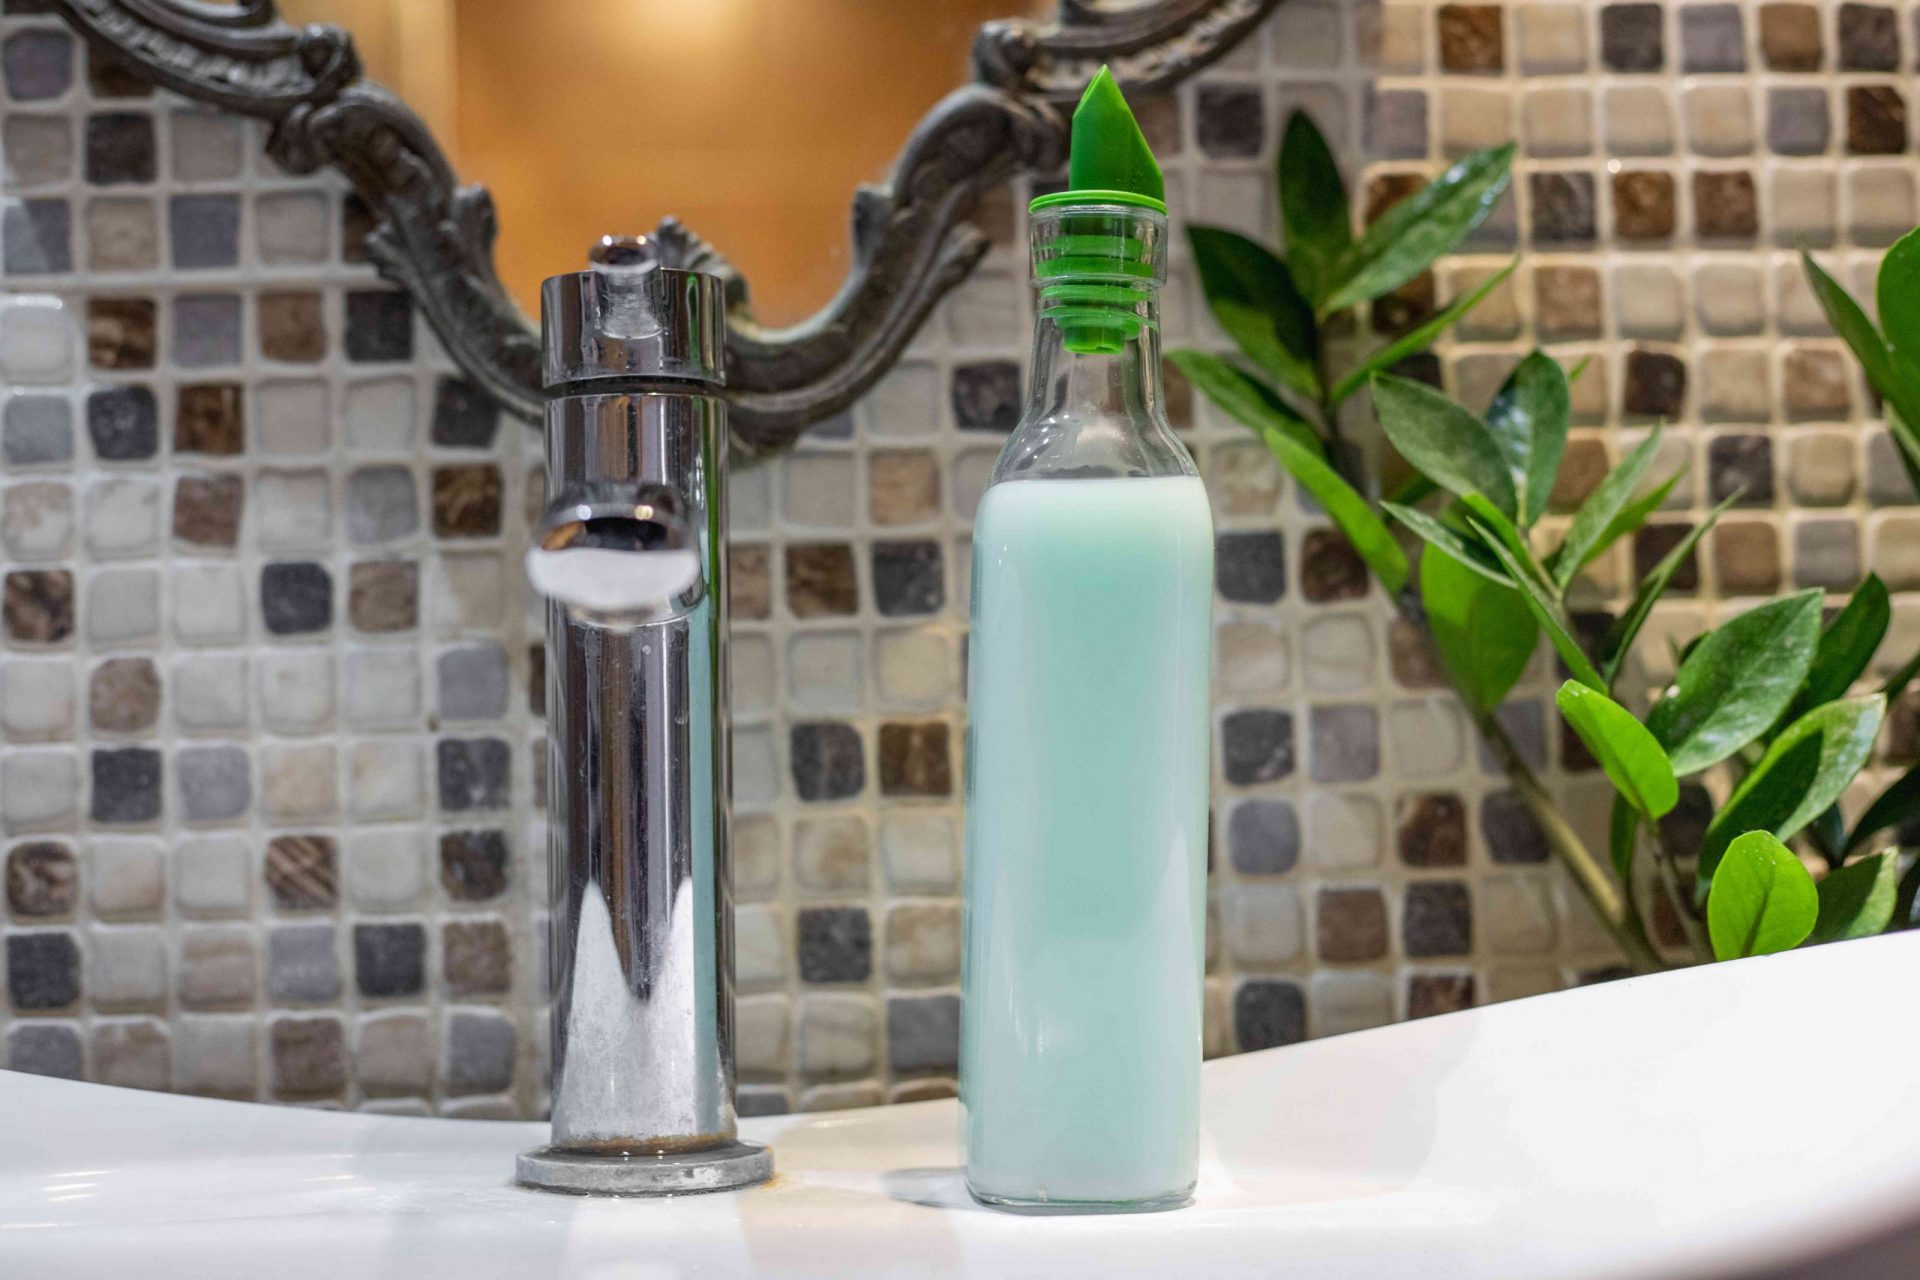 La botella de cristal del lavabo se convierte en un dispensador de jabón con tapa verde